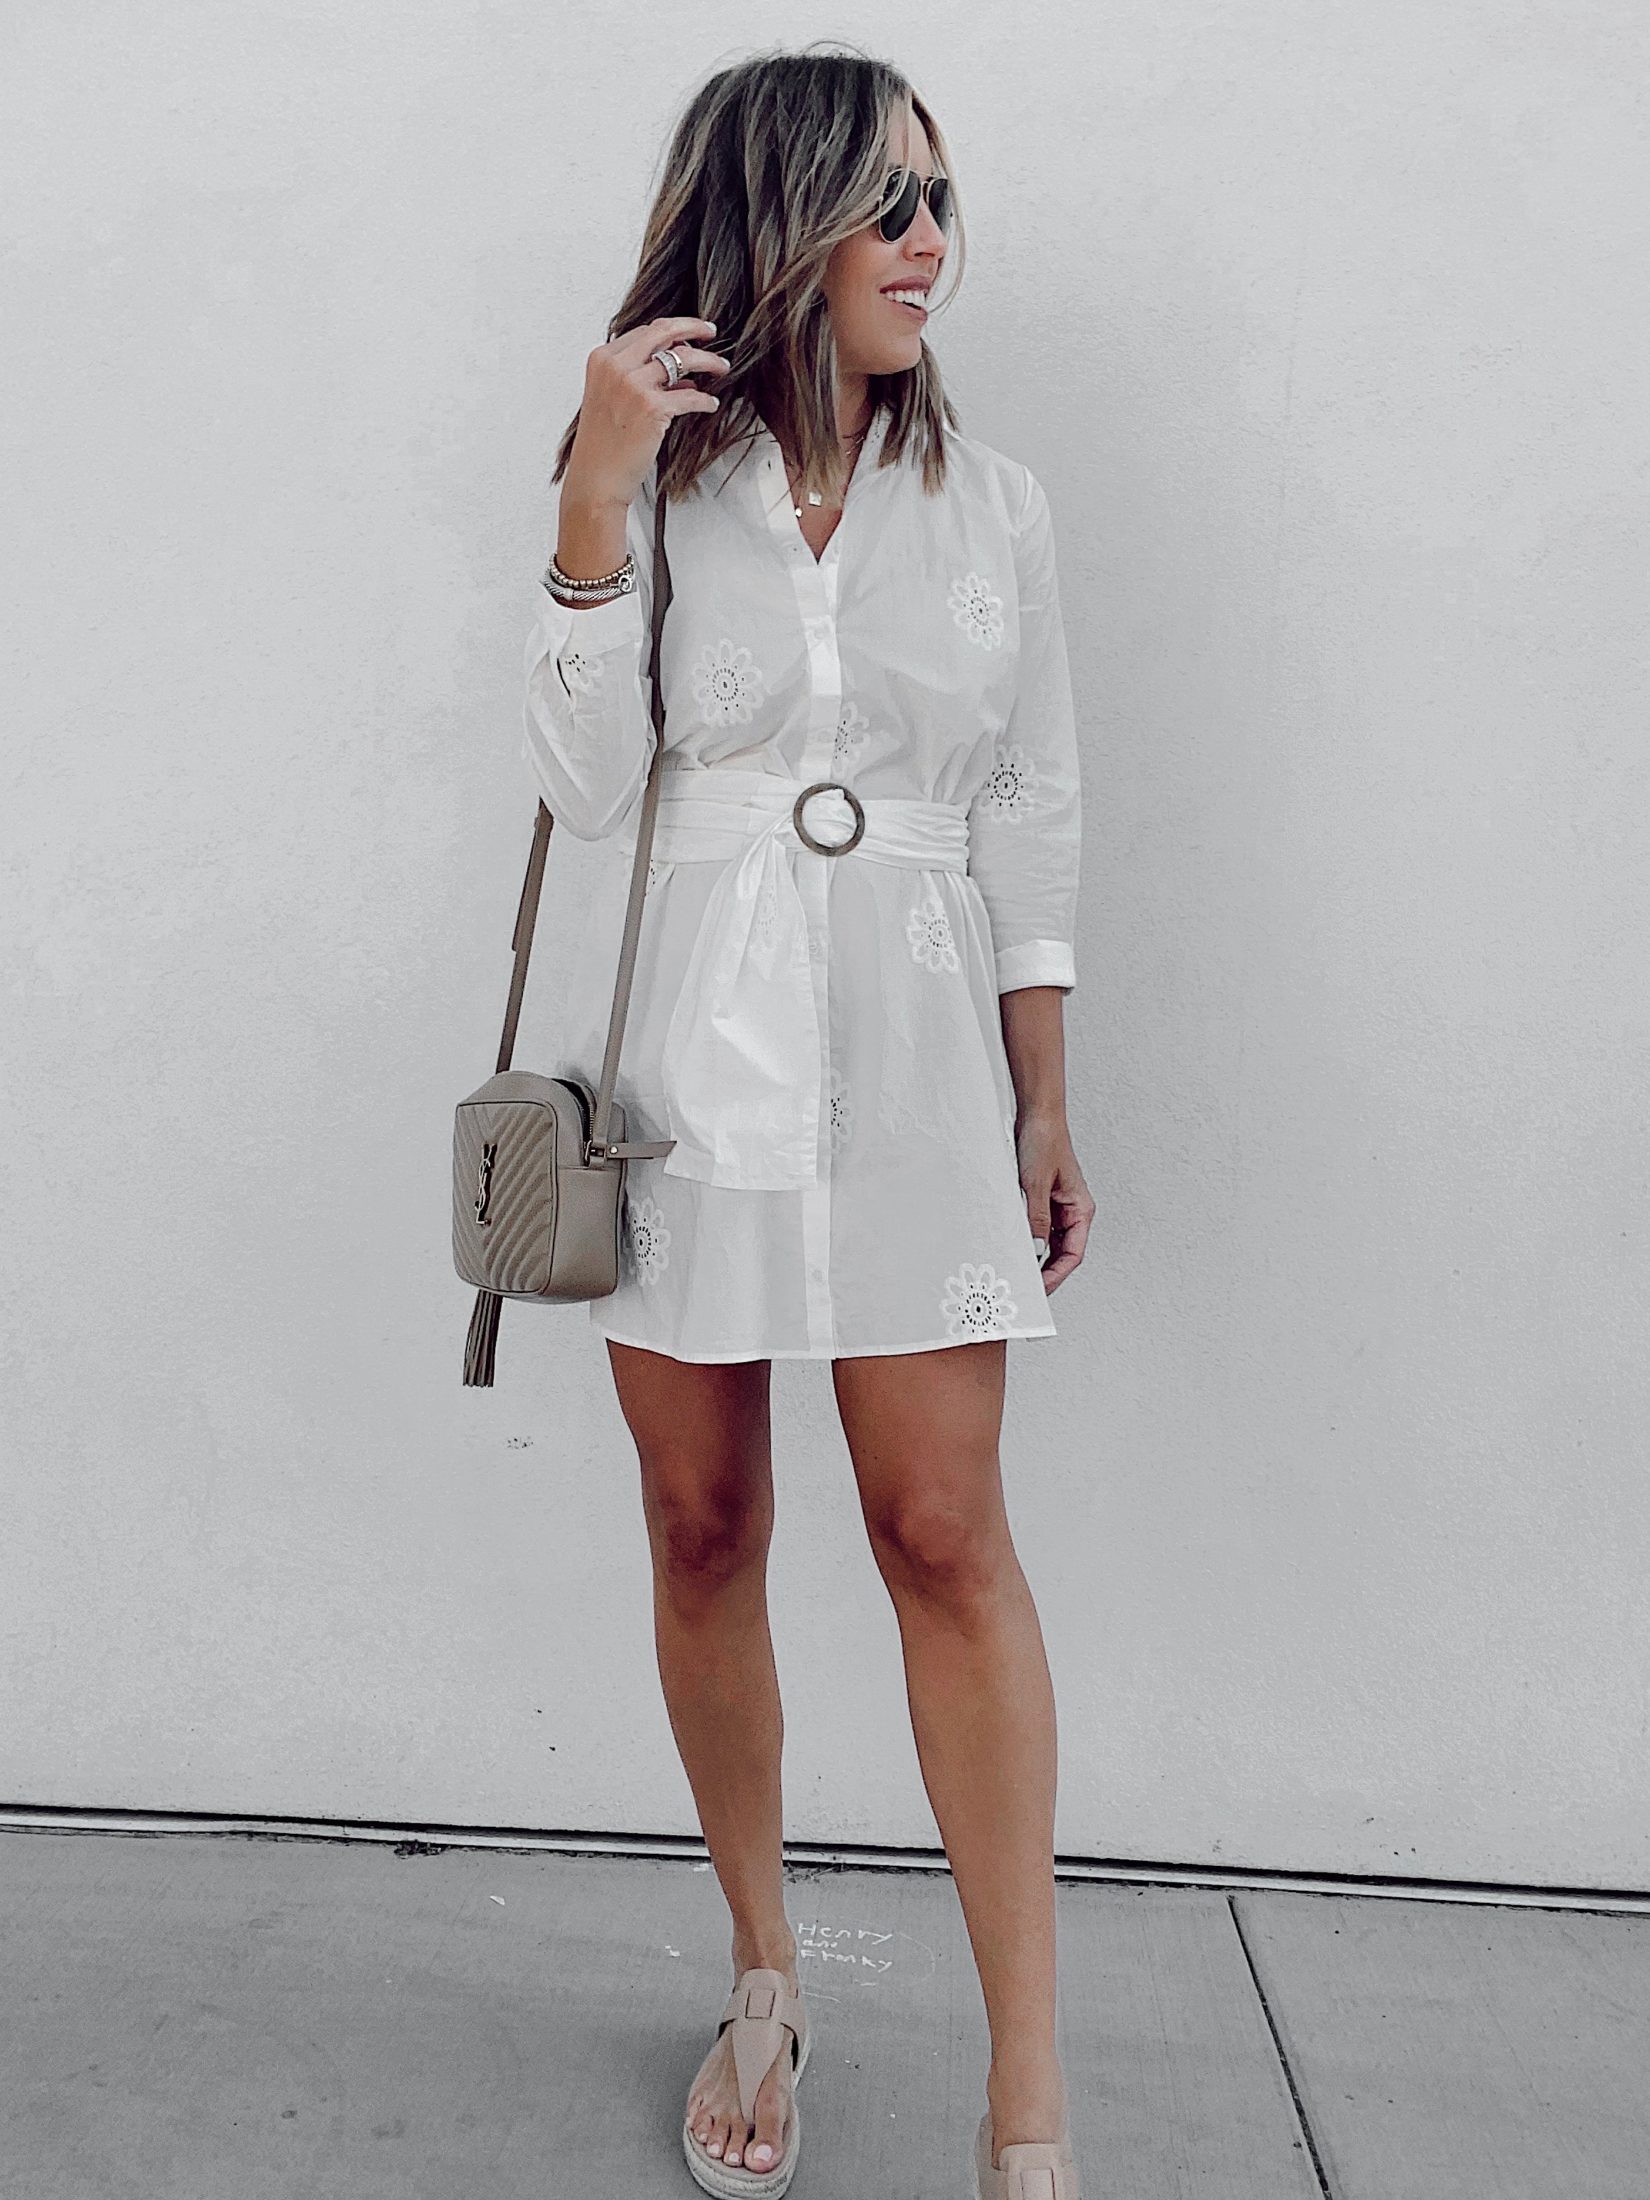 fashion blogger wearing white summer eyelet mini dress with belt